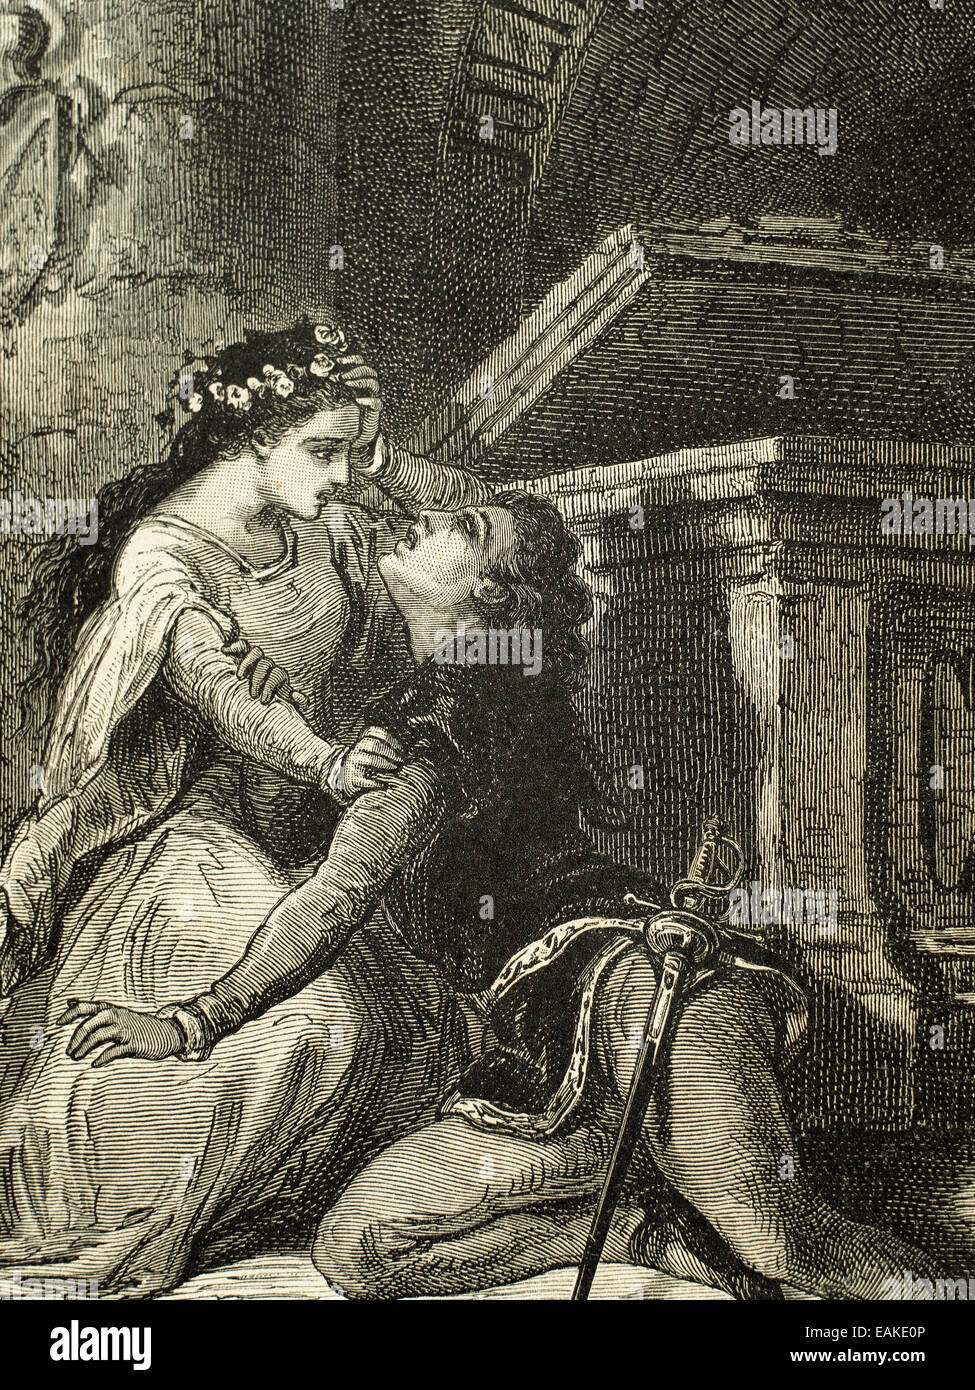 William Shakespeare (1564-1616). Englischer Schriftsteller. Romeo und Julia. Tod von Romeo. Kupferstich, 19. Jahrhundert. Stockfoto